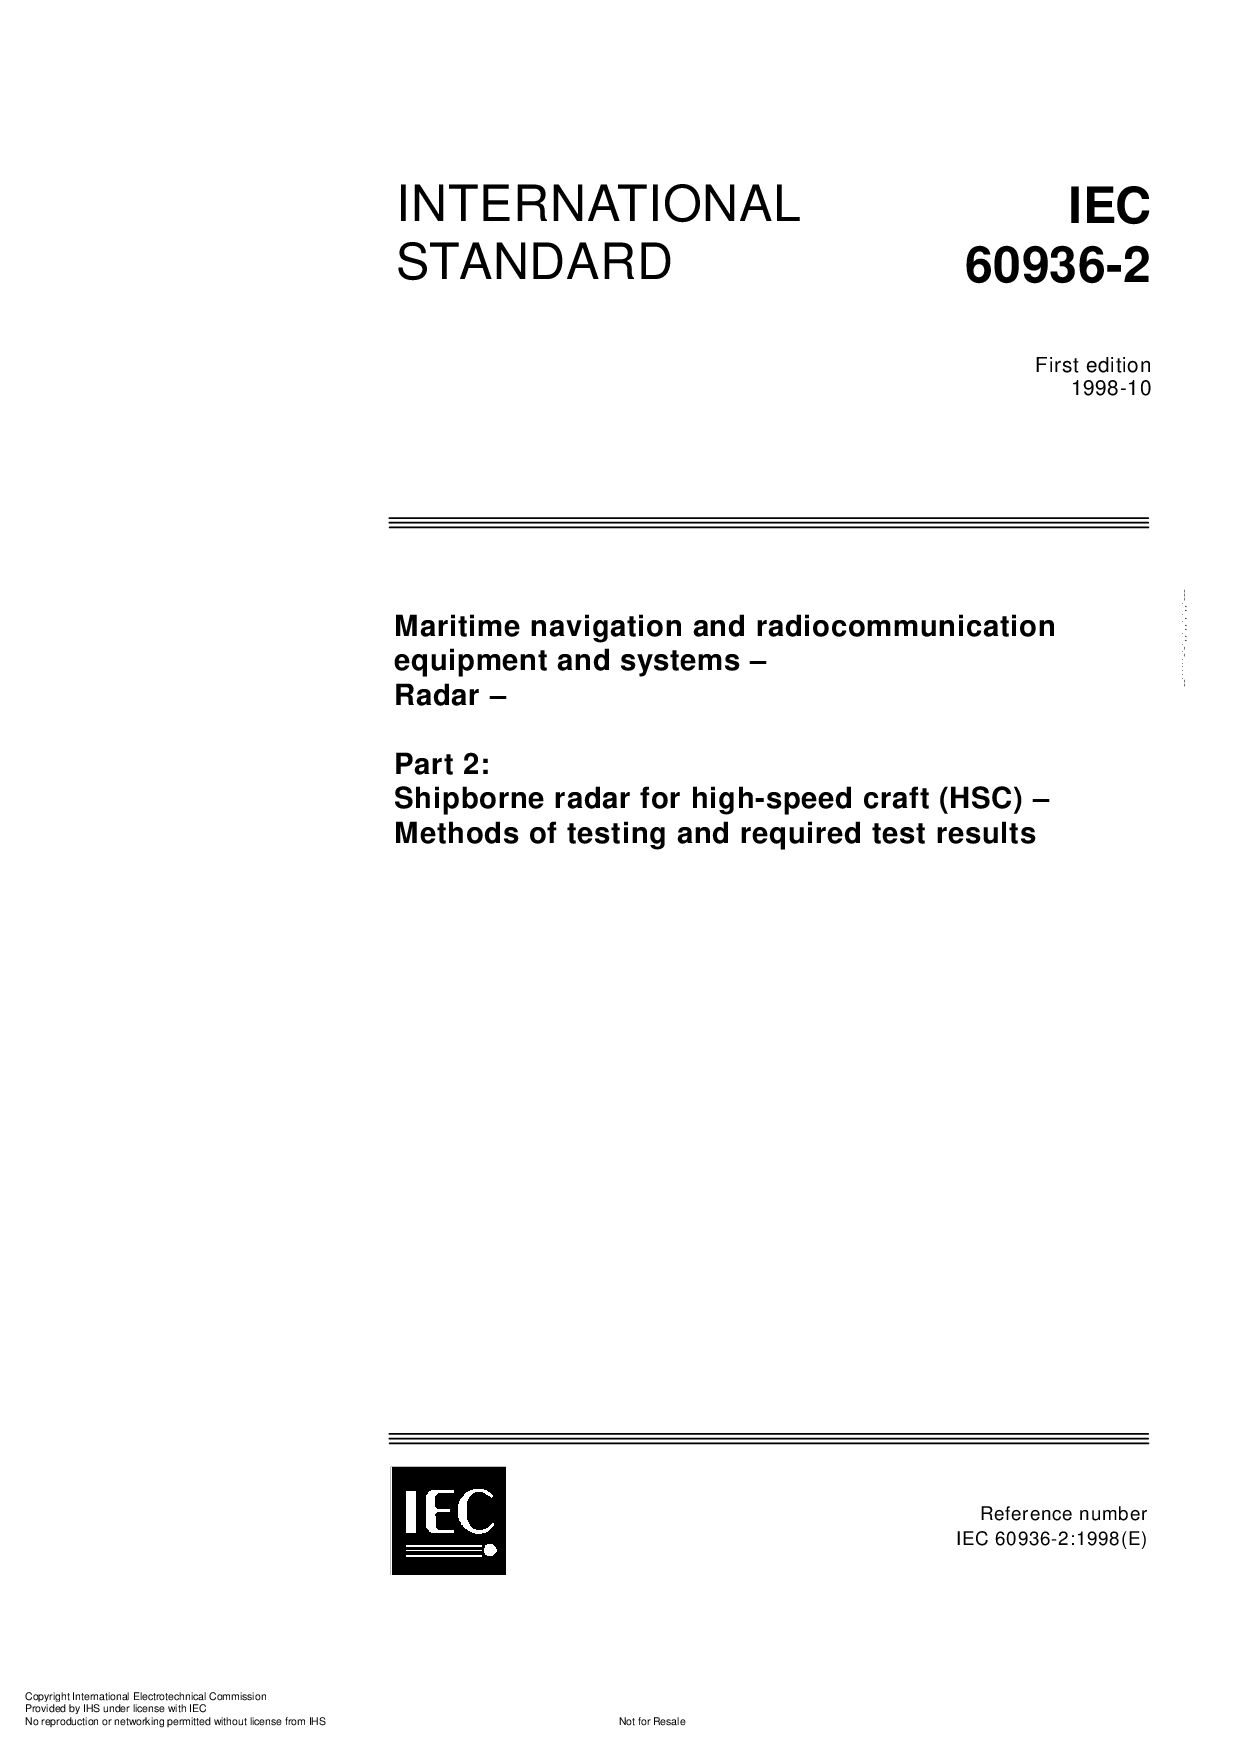 IEC 60936-2:1998封面图